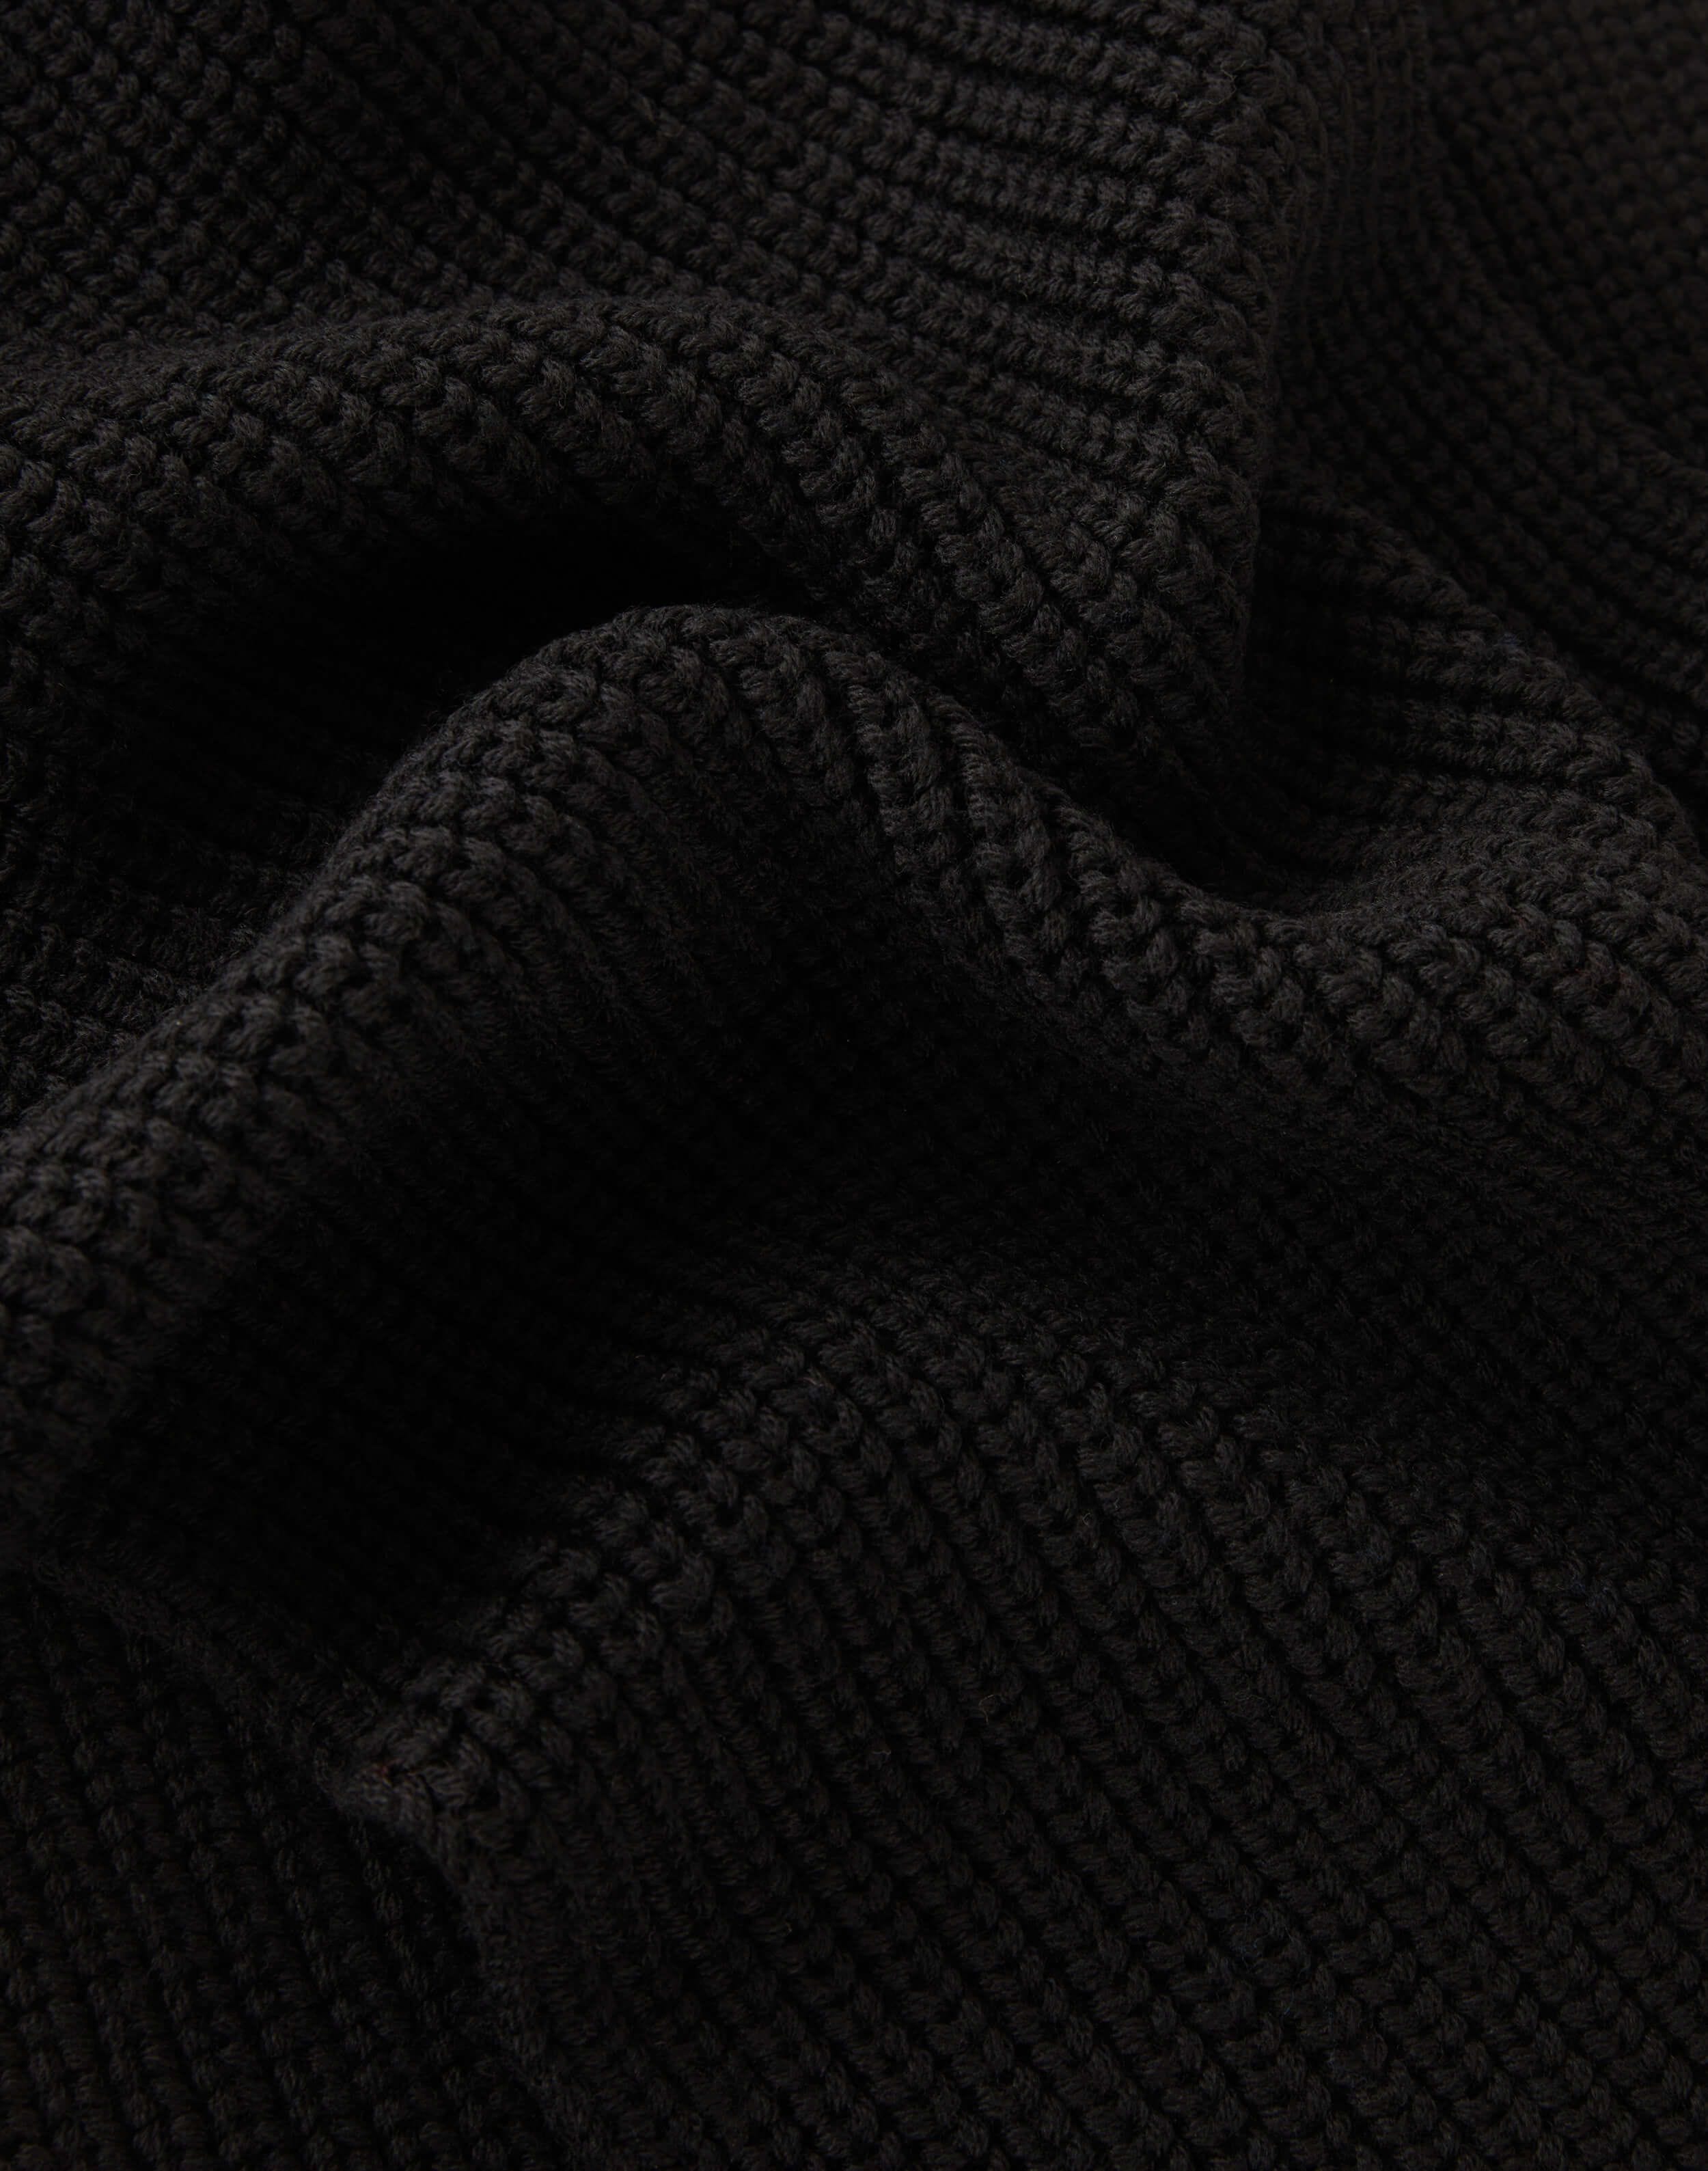 Ribbed scarf in black merino wool